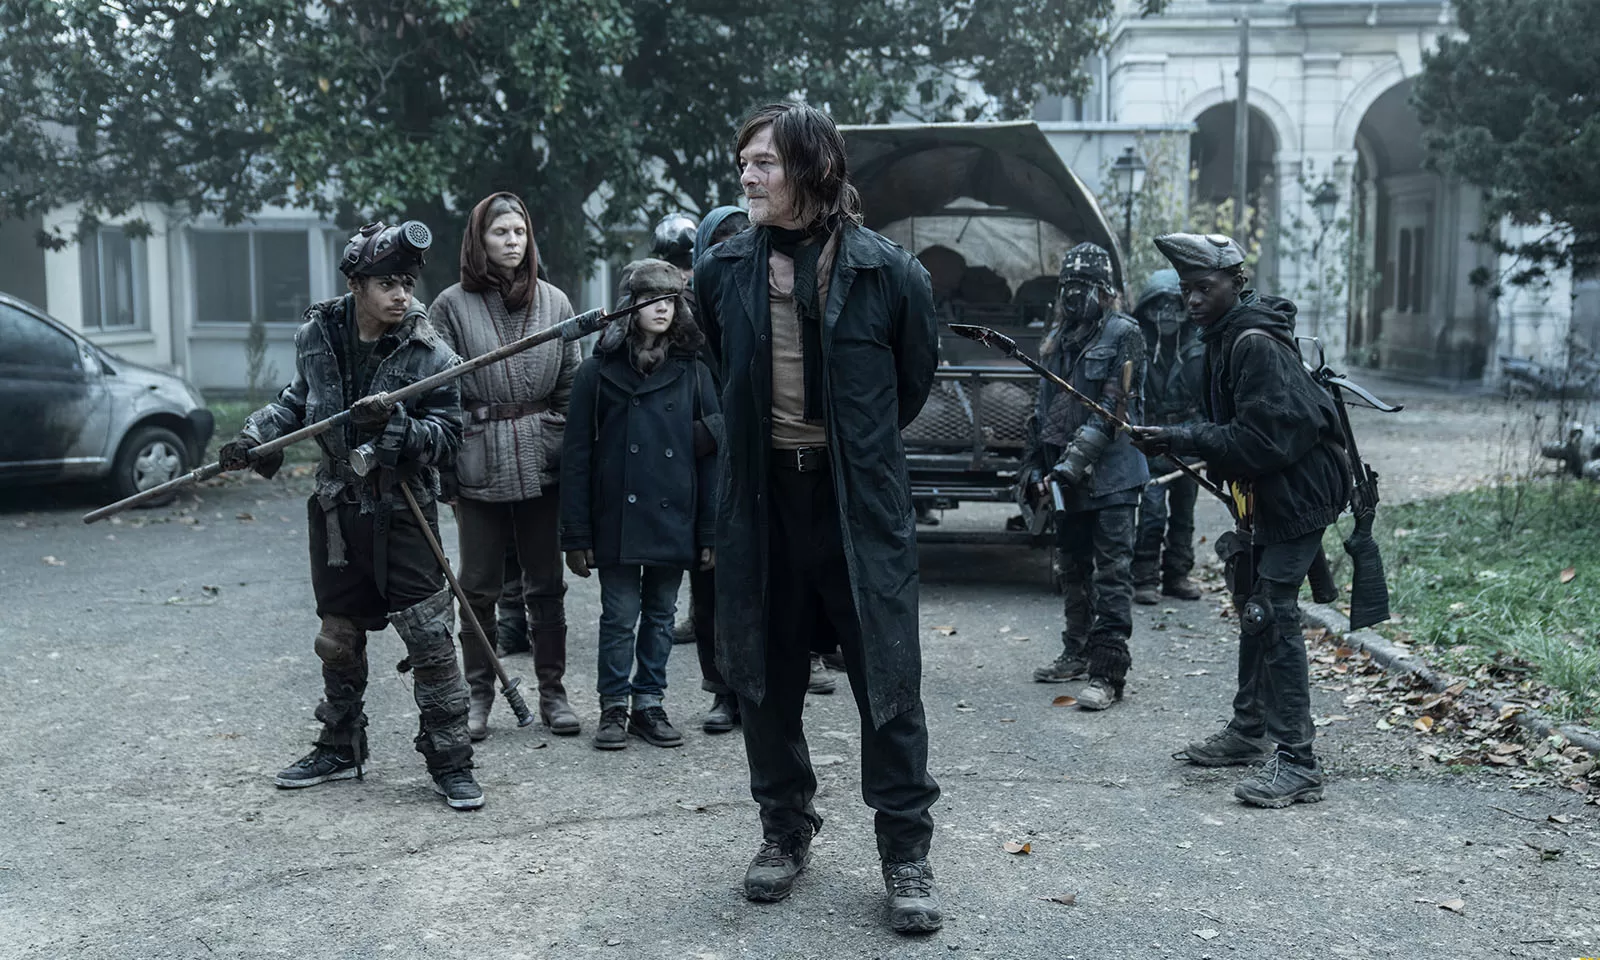 Daryl amarrado como refém das crianças em cena do Episódio 2 da 1ª temporada de The Walking Dead: Daryl Dixon.